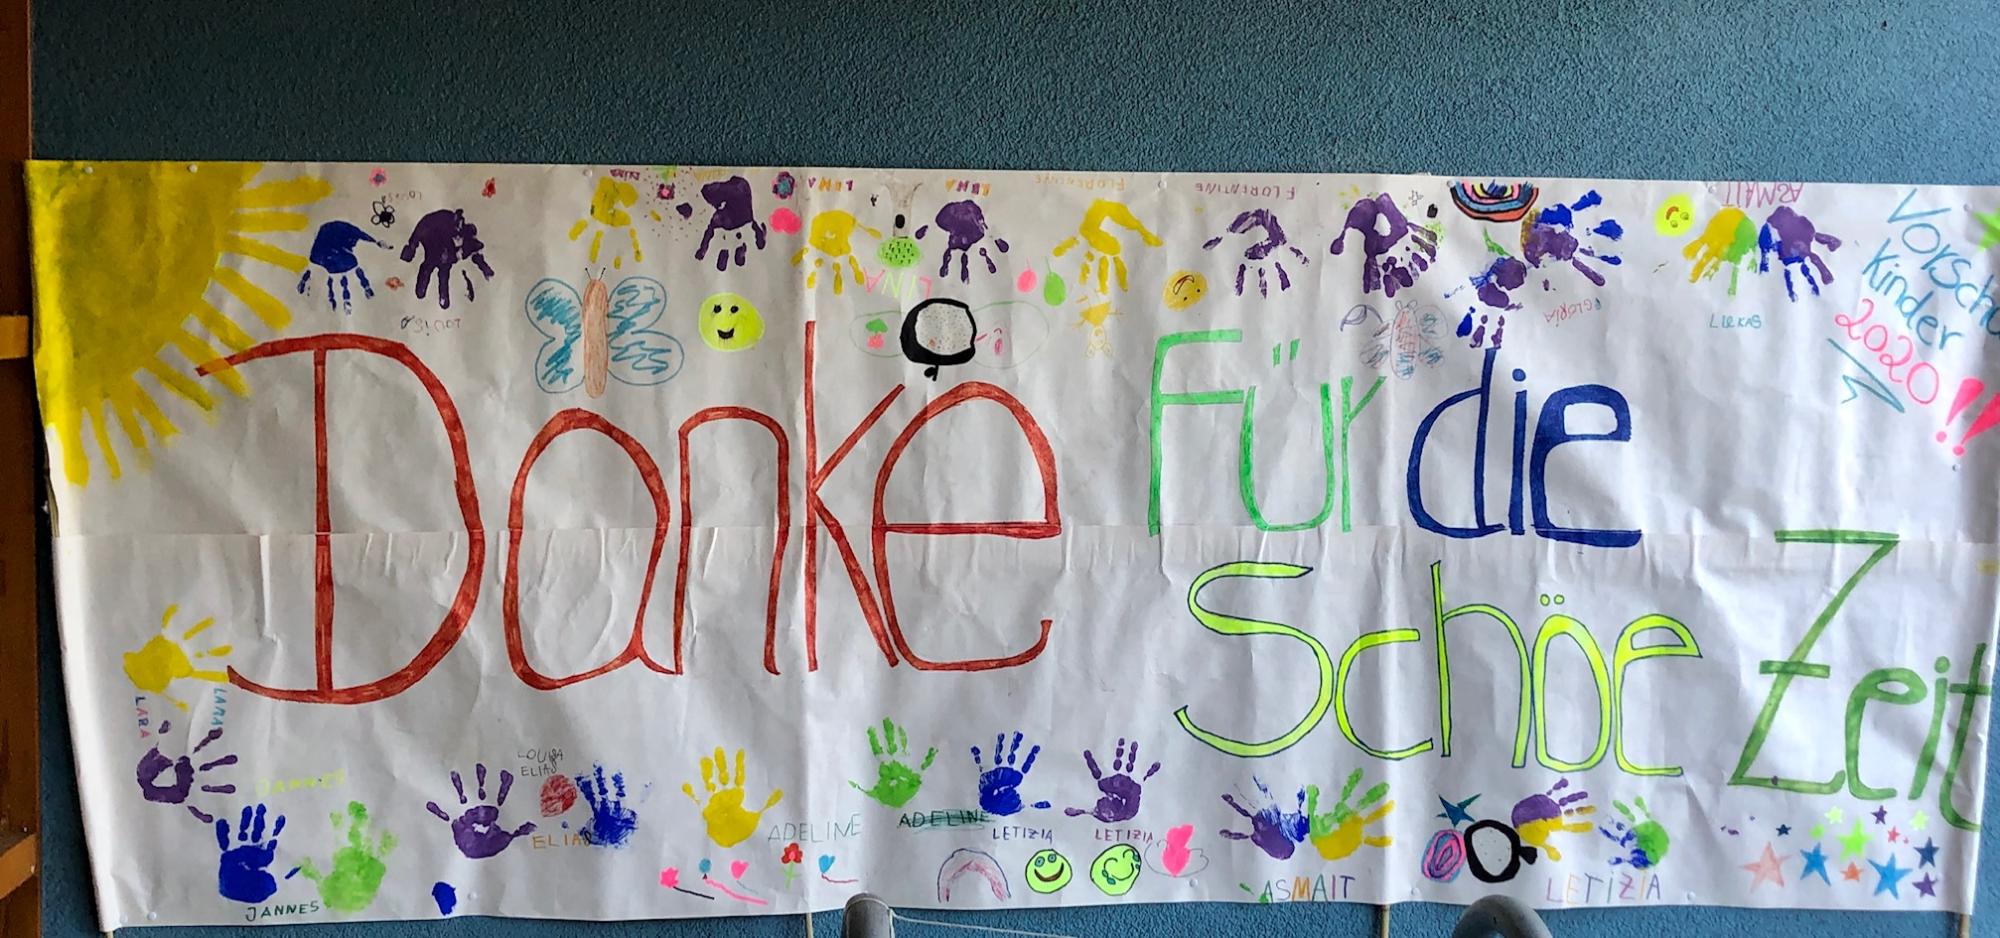 Plakat unserer Vorschulkinder zur Verabschiedung aus dem Kindergarten